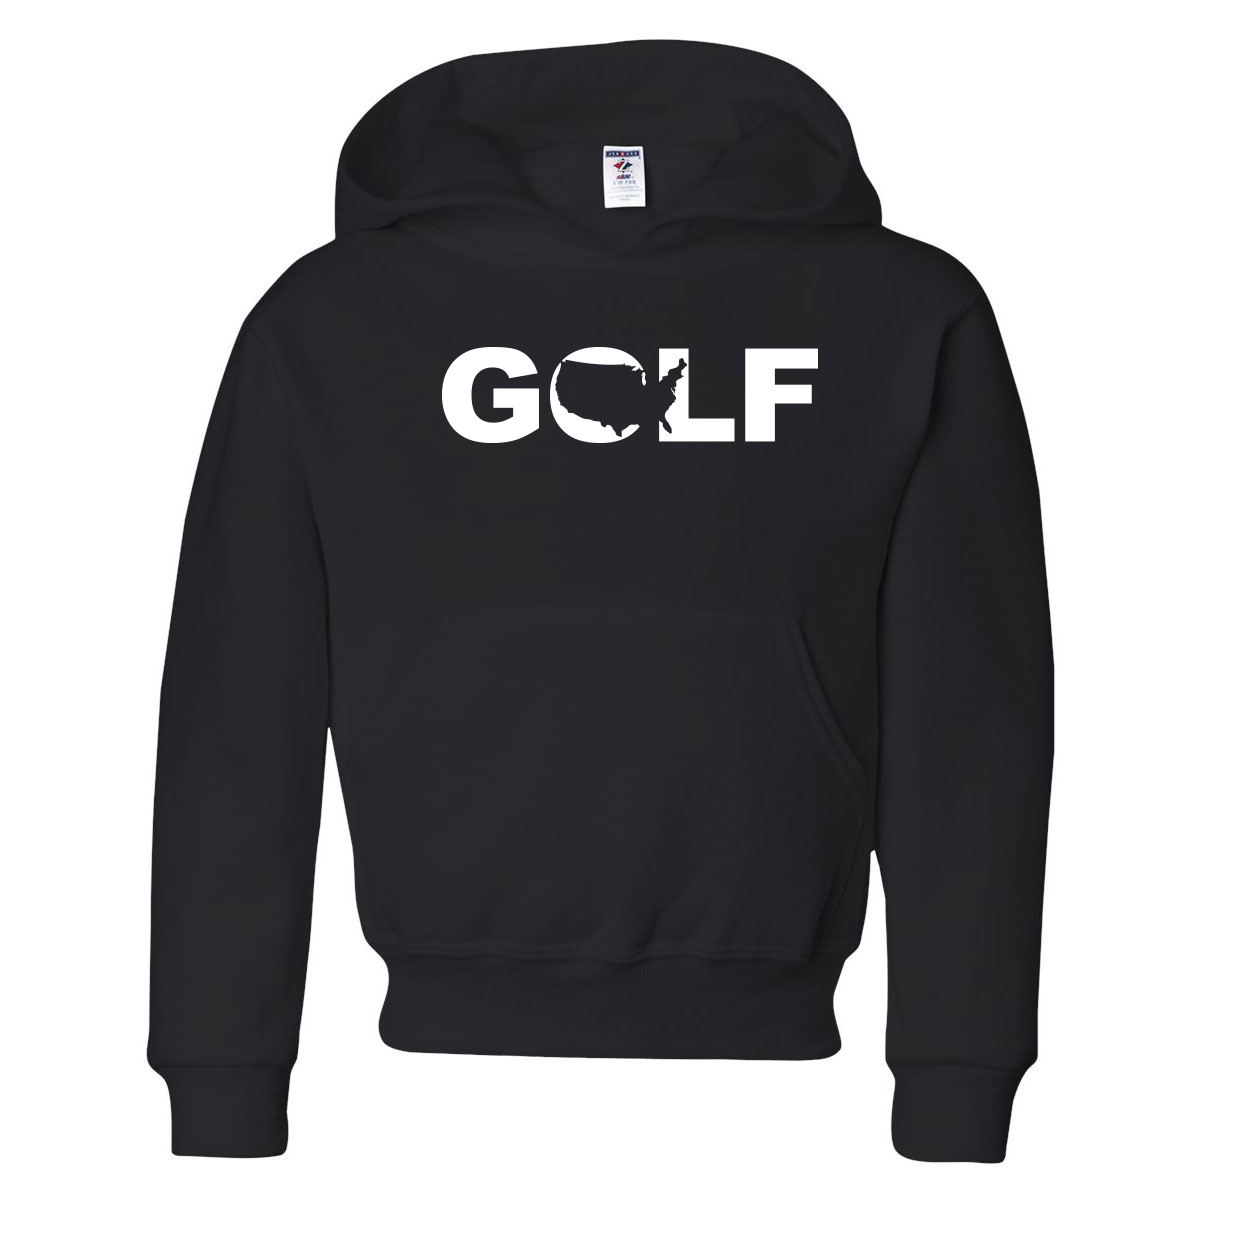 Golf United States Classic Youth Sweatshirt Black (White Logo)